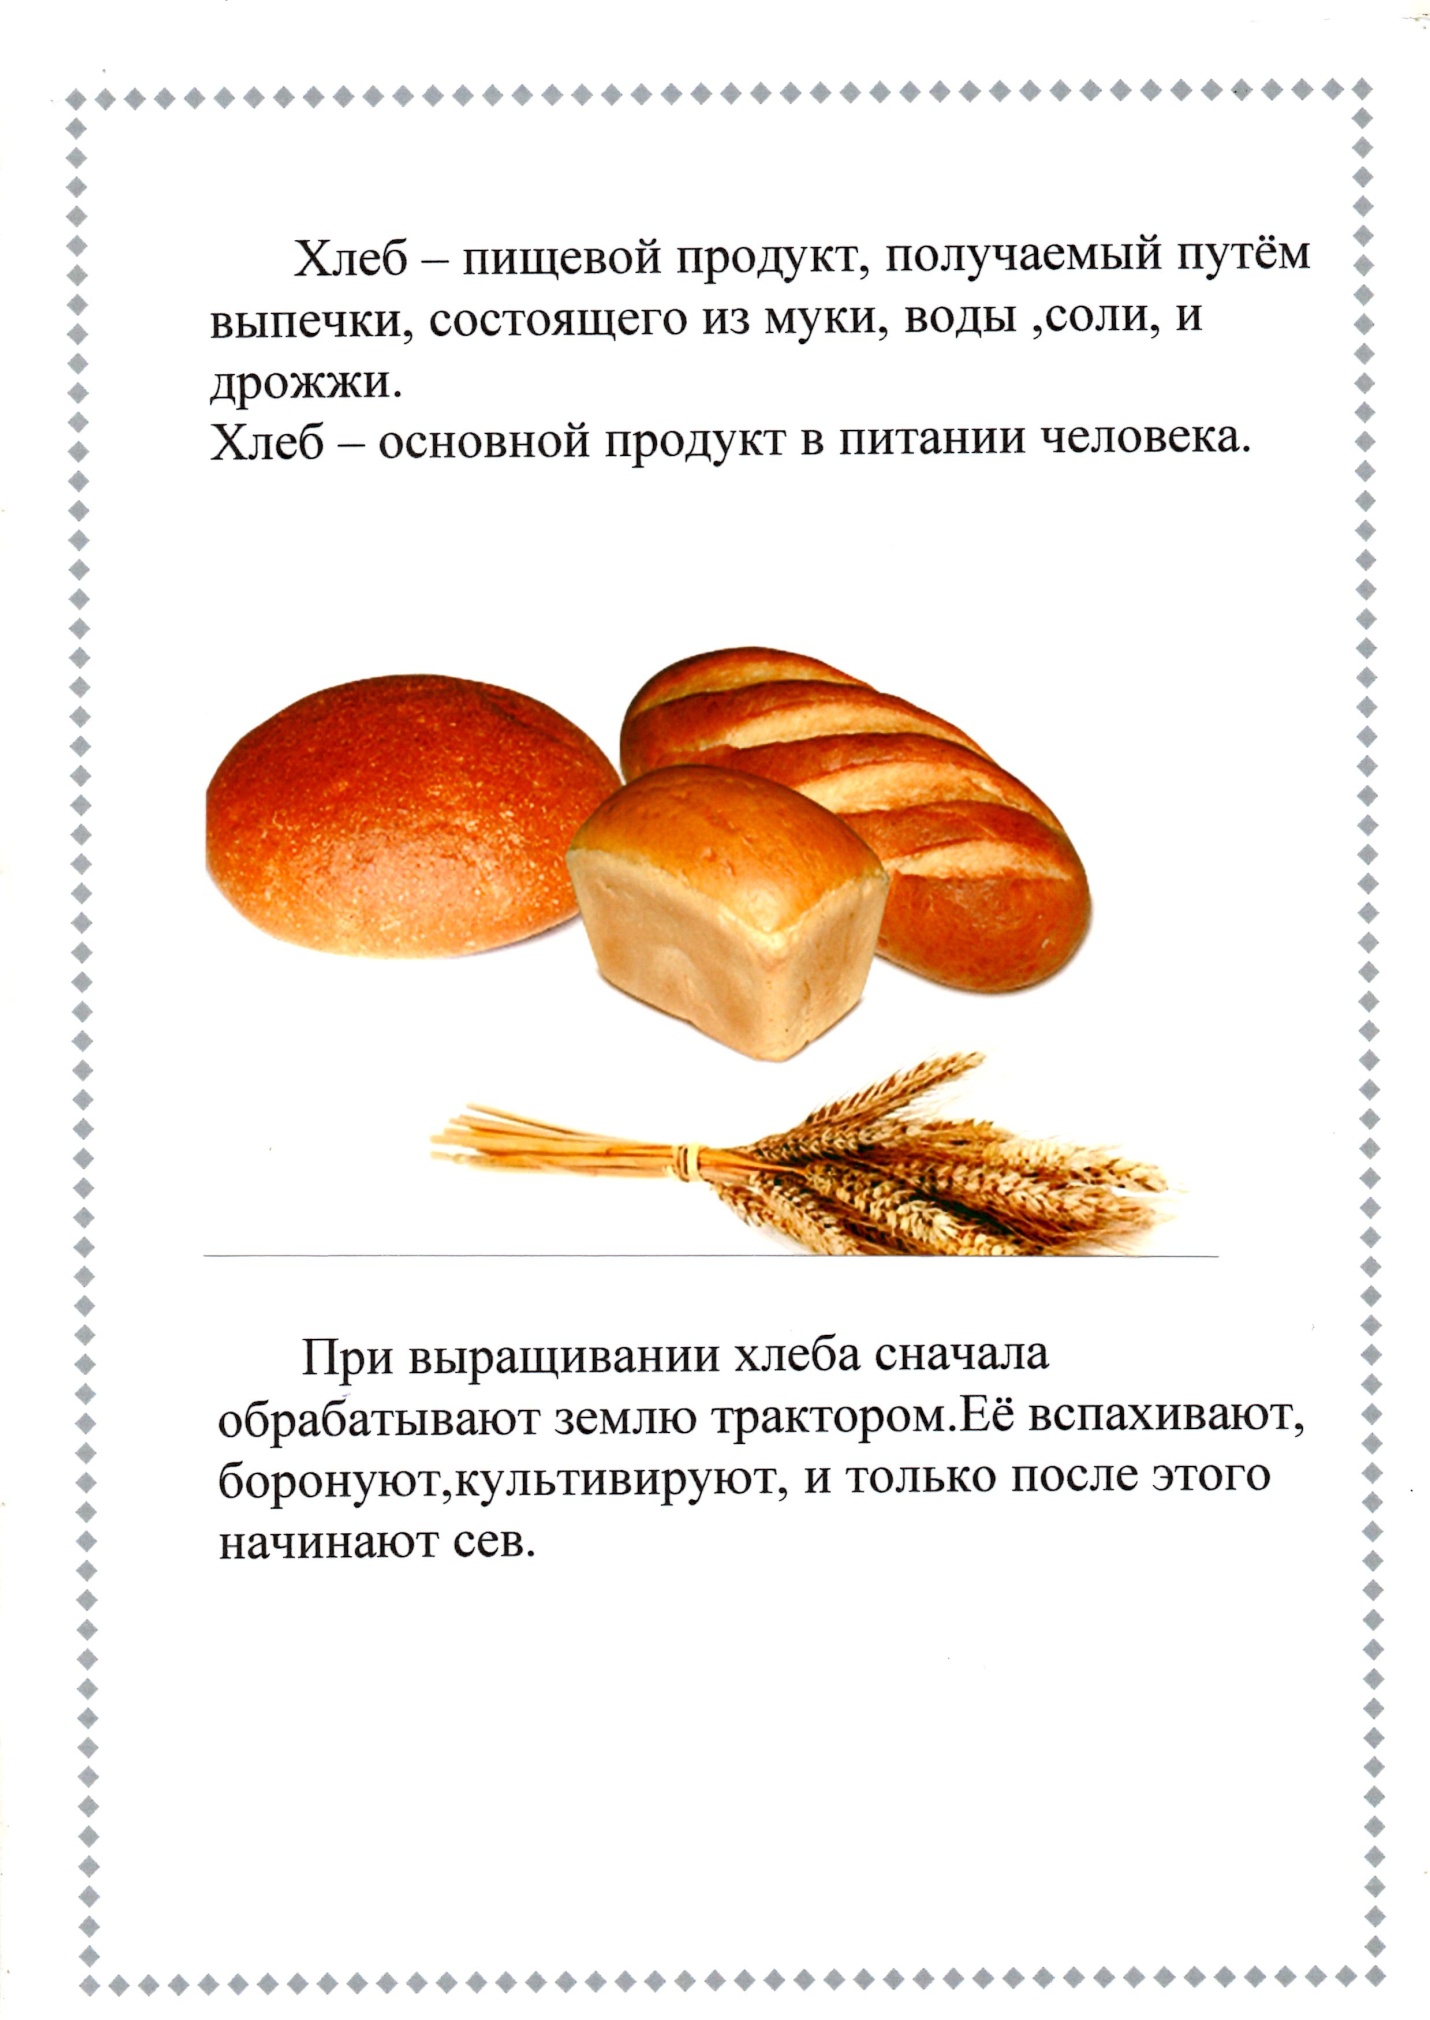 Проект на тему Хлеб - наше богатство